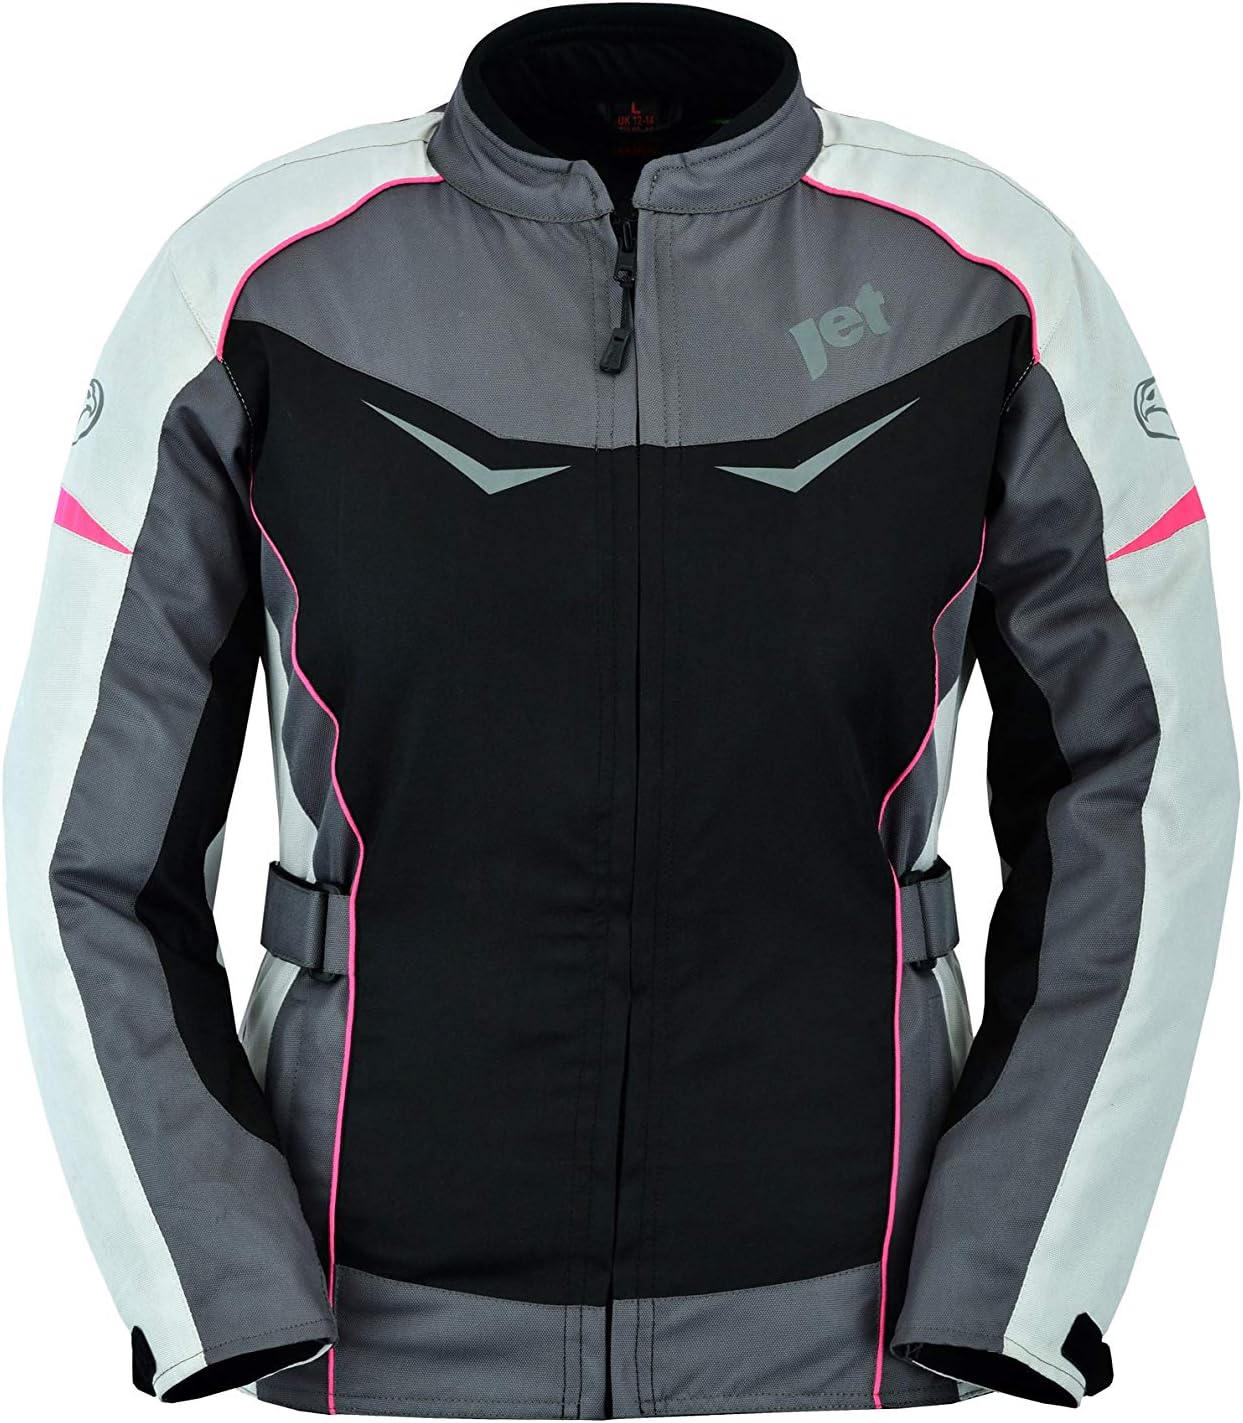 JET Womens Ladies Motorcycle Motorbike Jacket Waterproof Armoured ROCHELLE (M (10), Grey/Pink)